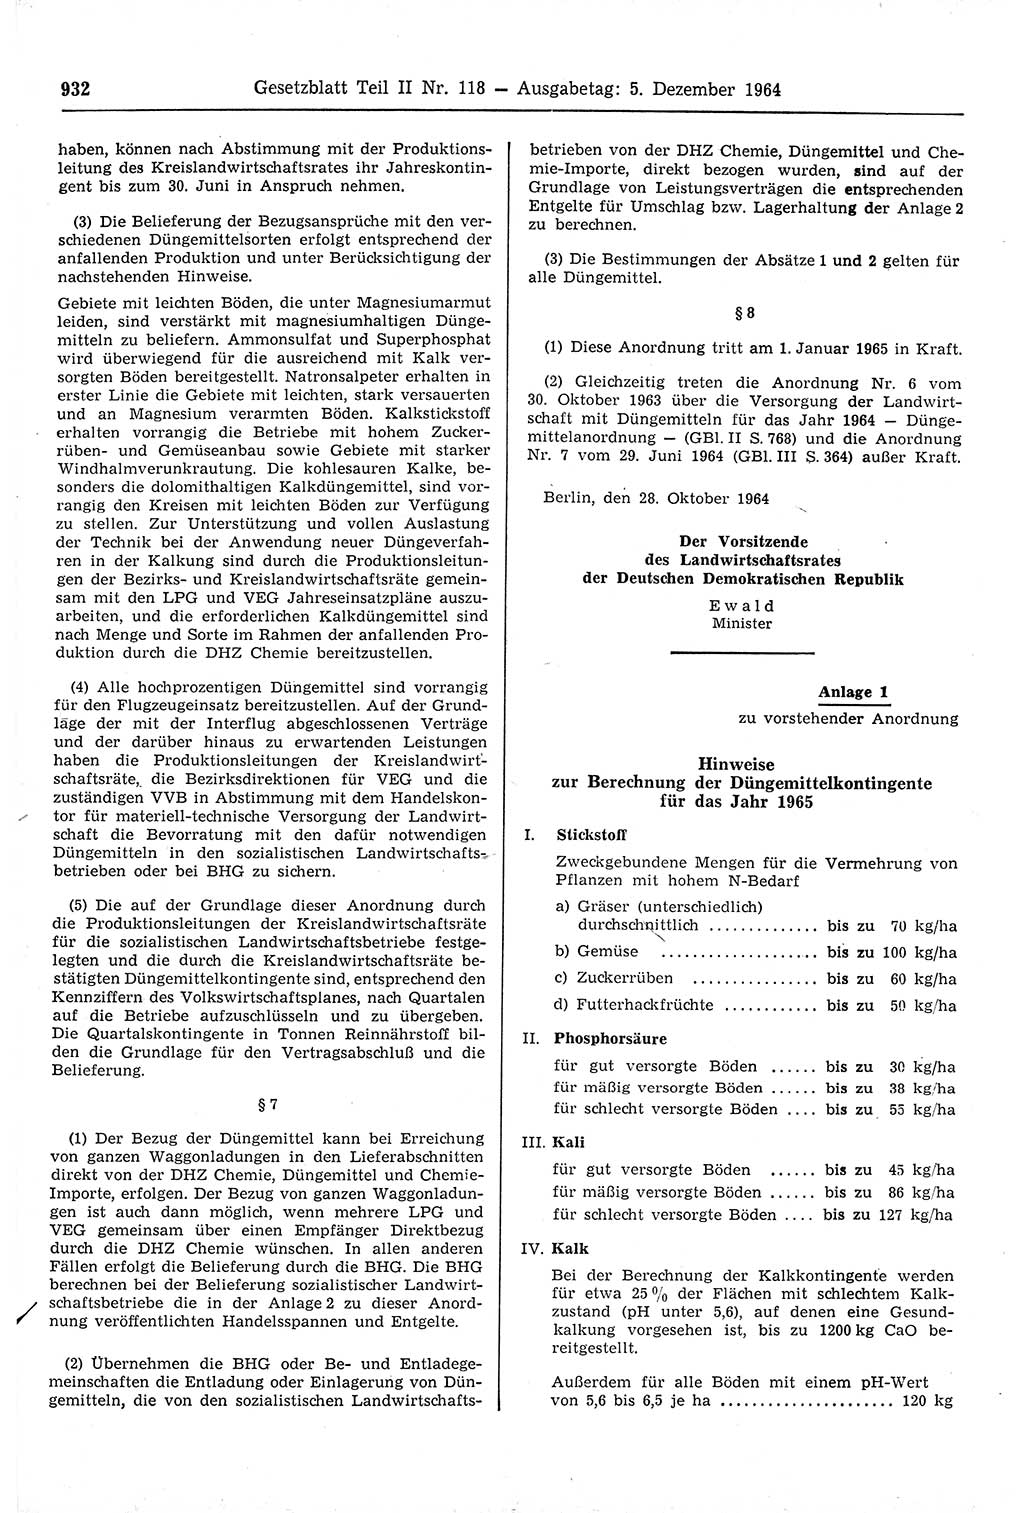 Gesetzblatt (GBl.) der Deutschen Demokratischen Republik (DDR) Teil ⅠⅠ 1964, Seite 932 (GBl. DDR ⅠⅠ 1964, S. 932)